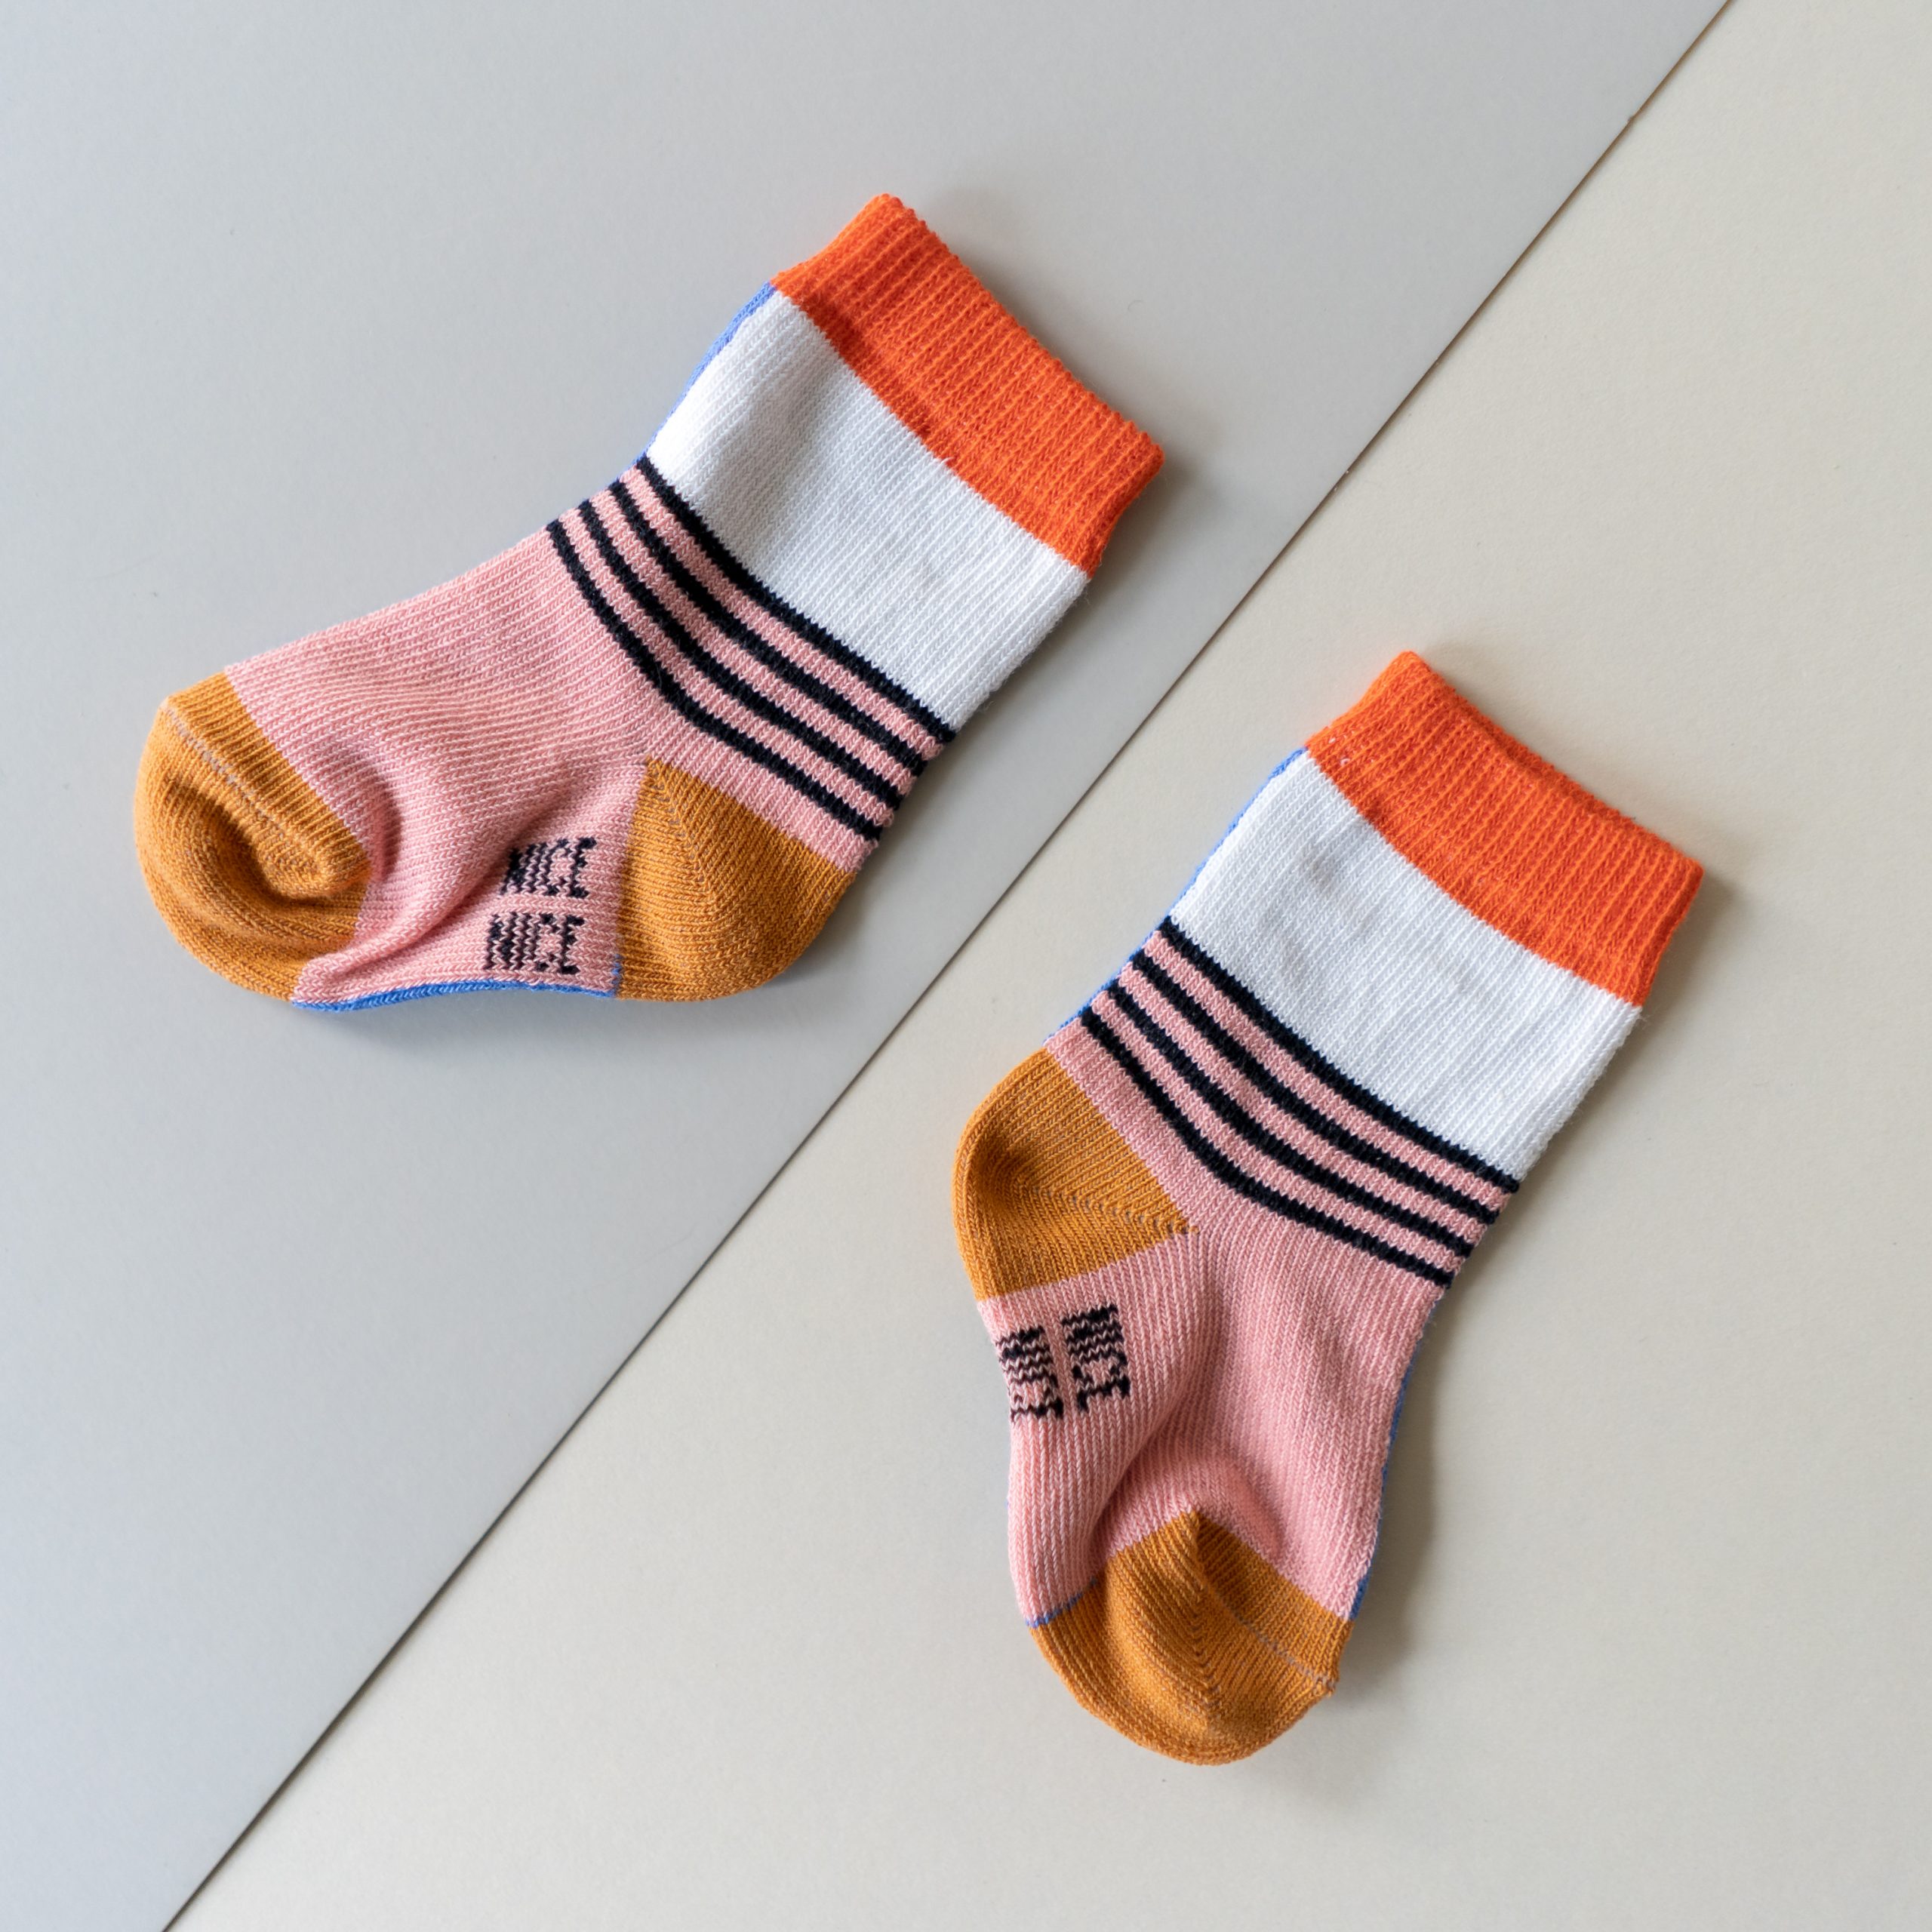 Nice Socks Baby-Kindersocken halb/halb lilac 04